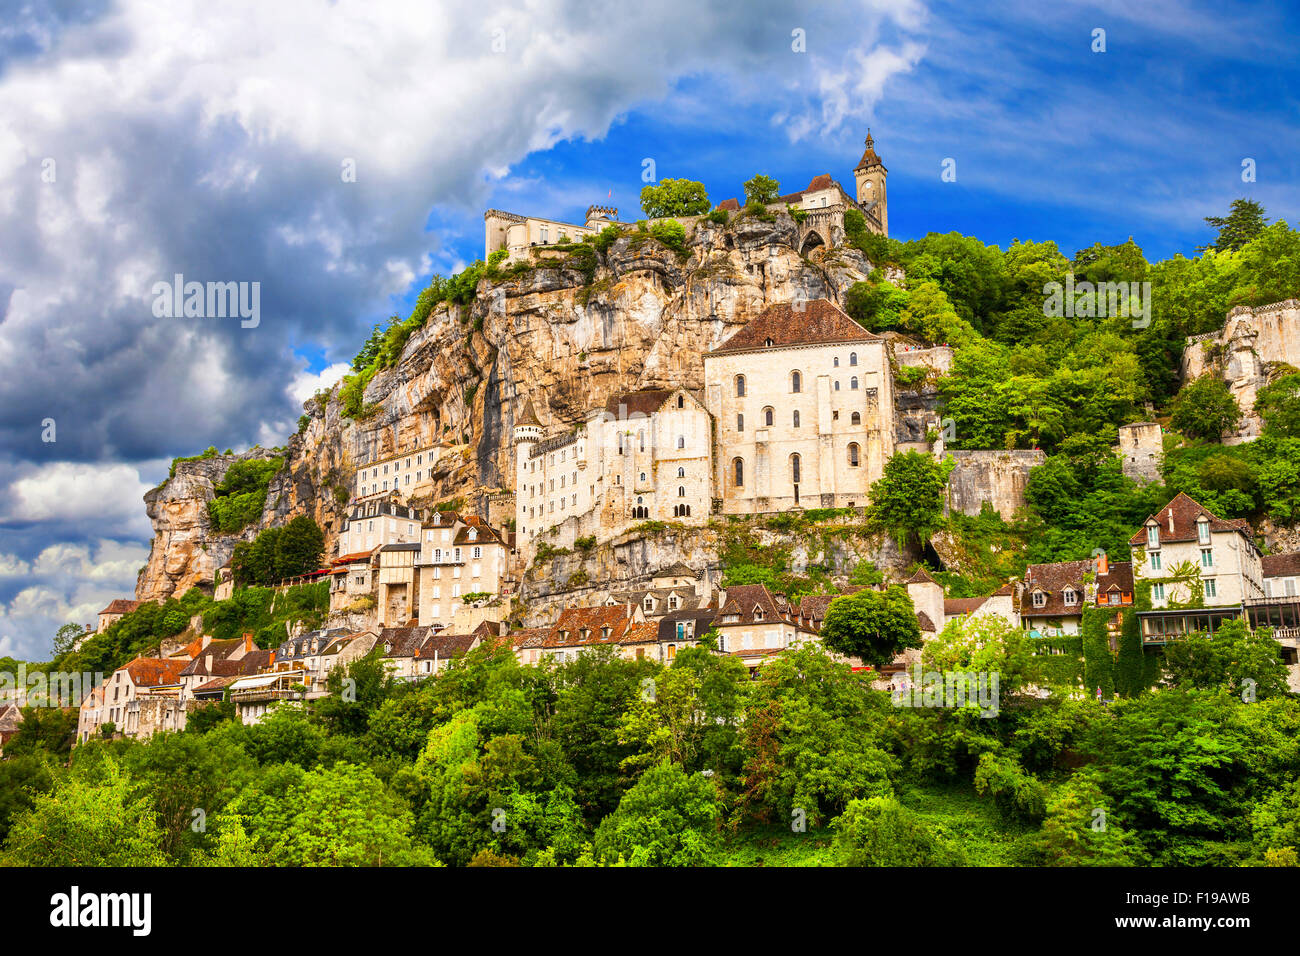 Rocamadour - beeindruckende mittelalterliche Dorf und Schloss in Frankreich, touristische Attraktion Stockfoto